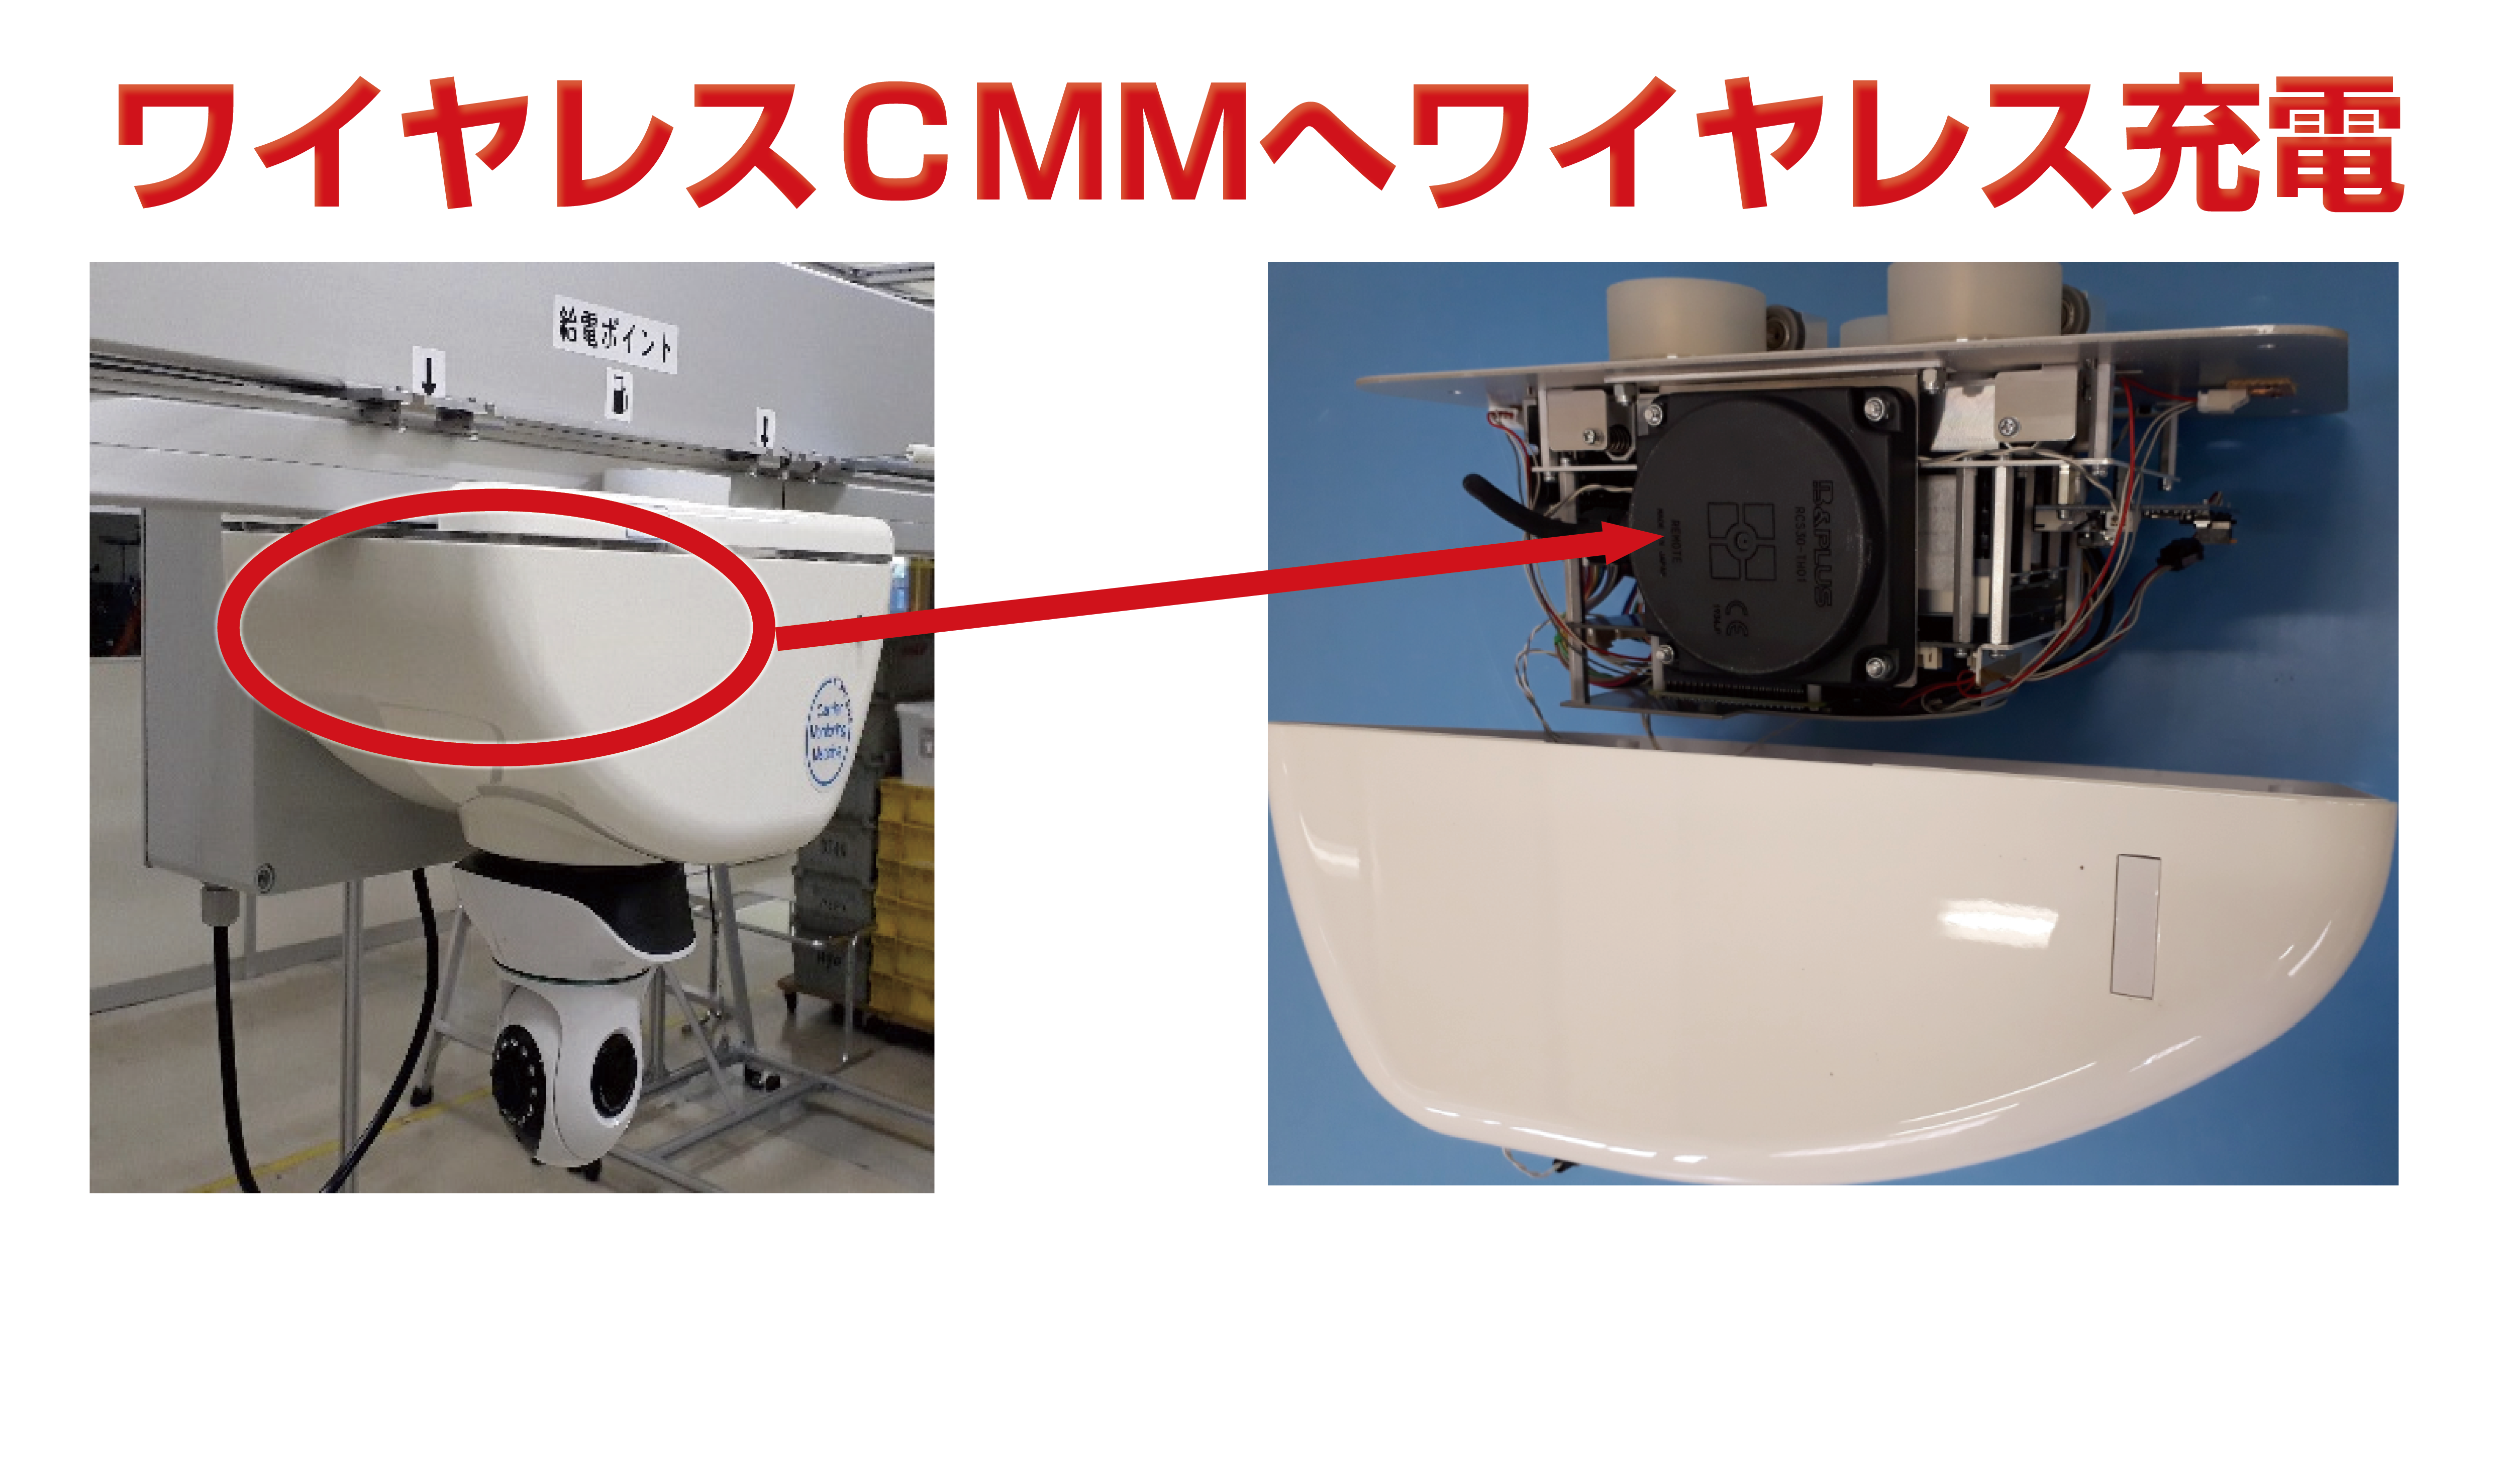 【導入事例】東京通信機工業株式会社様の開発中のCMMに30Wリチウムイオン電池用充電リモート（ワイヤレス充電器）が採用されました